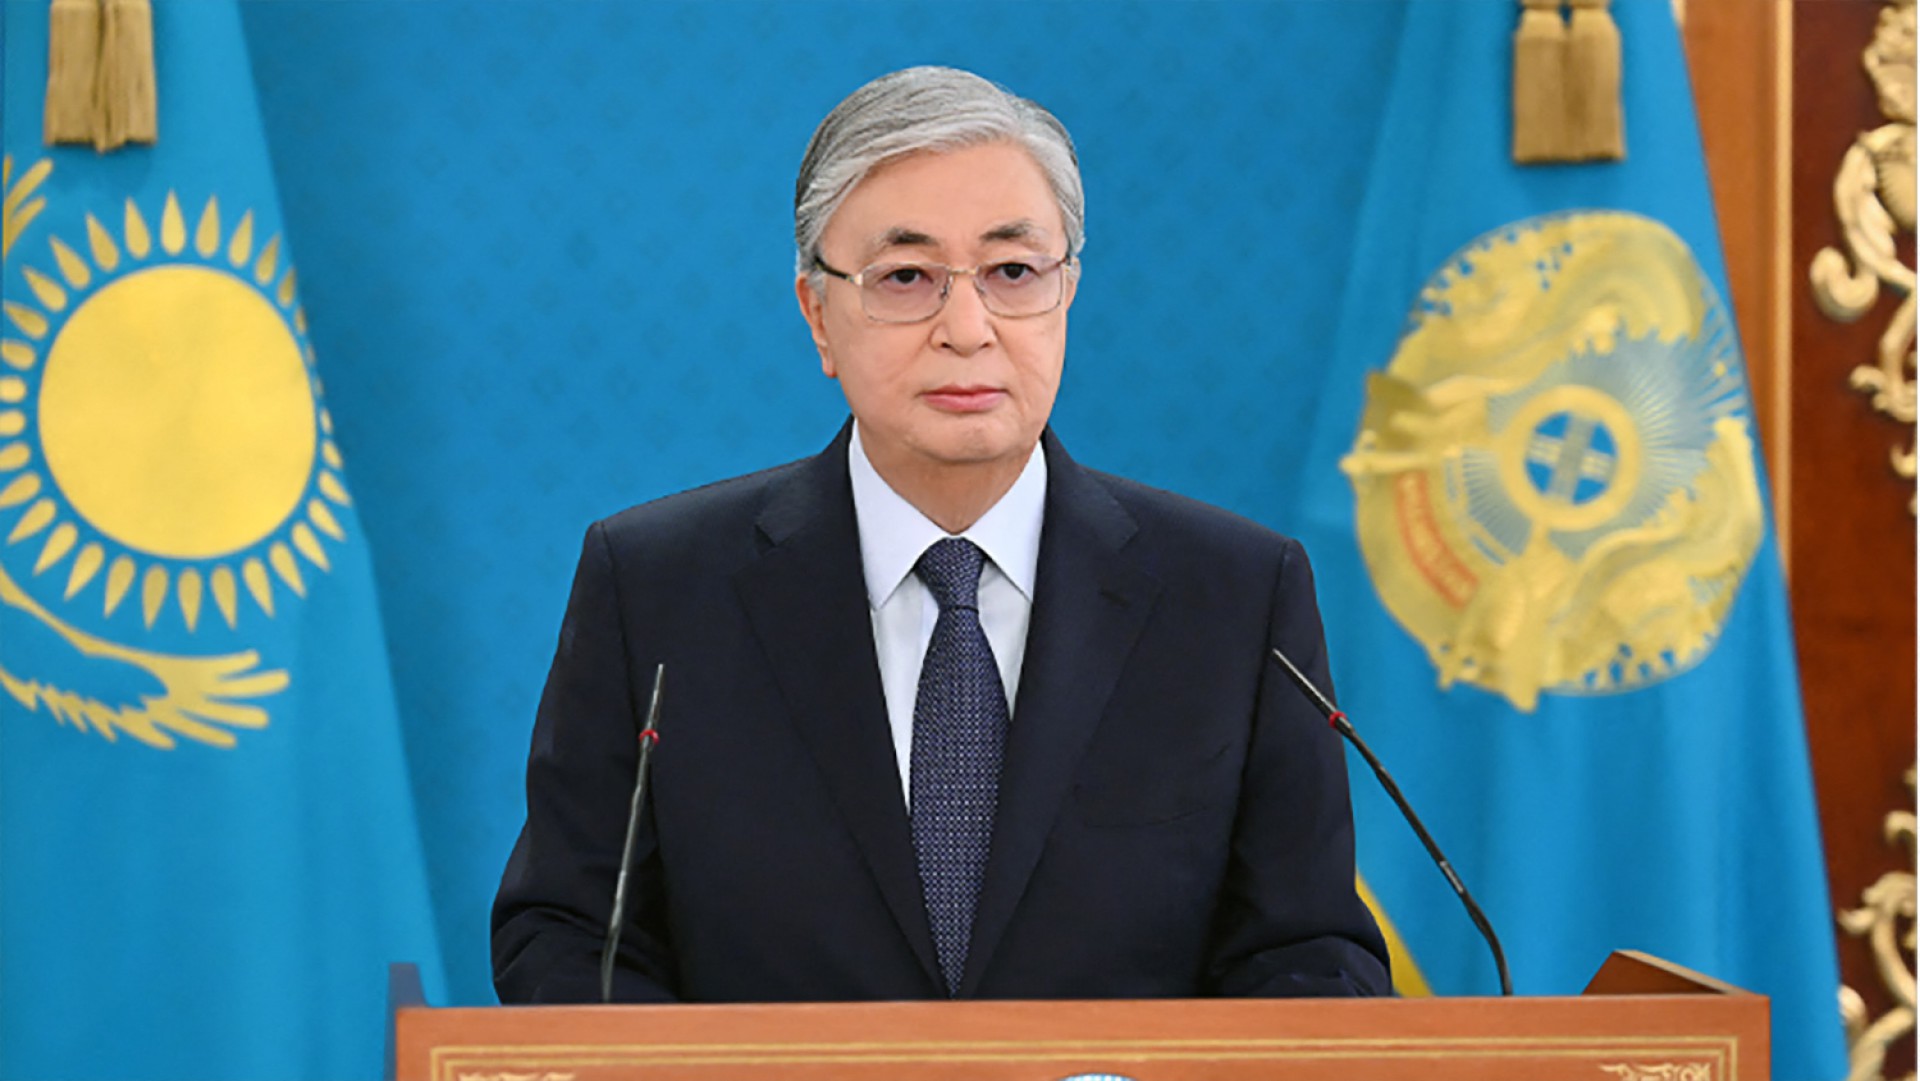 Esta imagem de divulgação do serviço de imprensa presidencial do Cazaquistão em 7 de janeiro de 2022 mostra o presidente do Cazaquistão, Kassym-Jomart Tokayev, fazendo um discurso público em Almaty.(Foto: Divulgação)